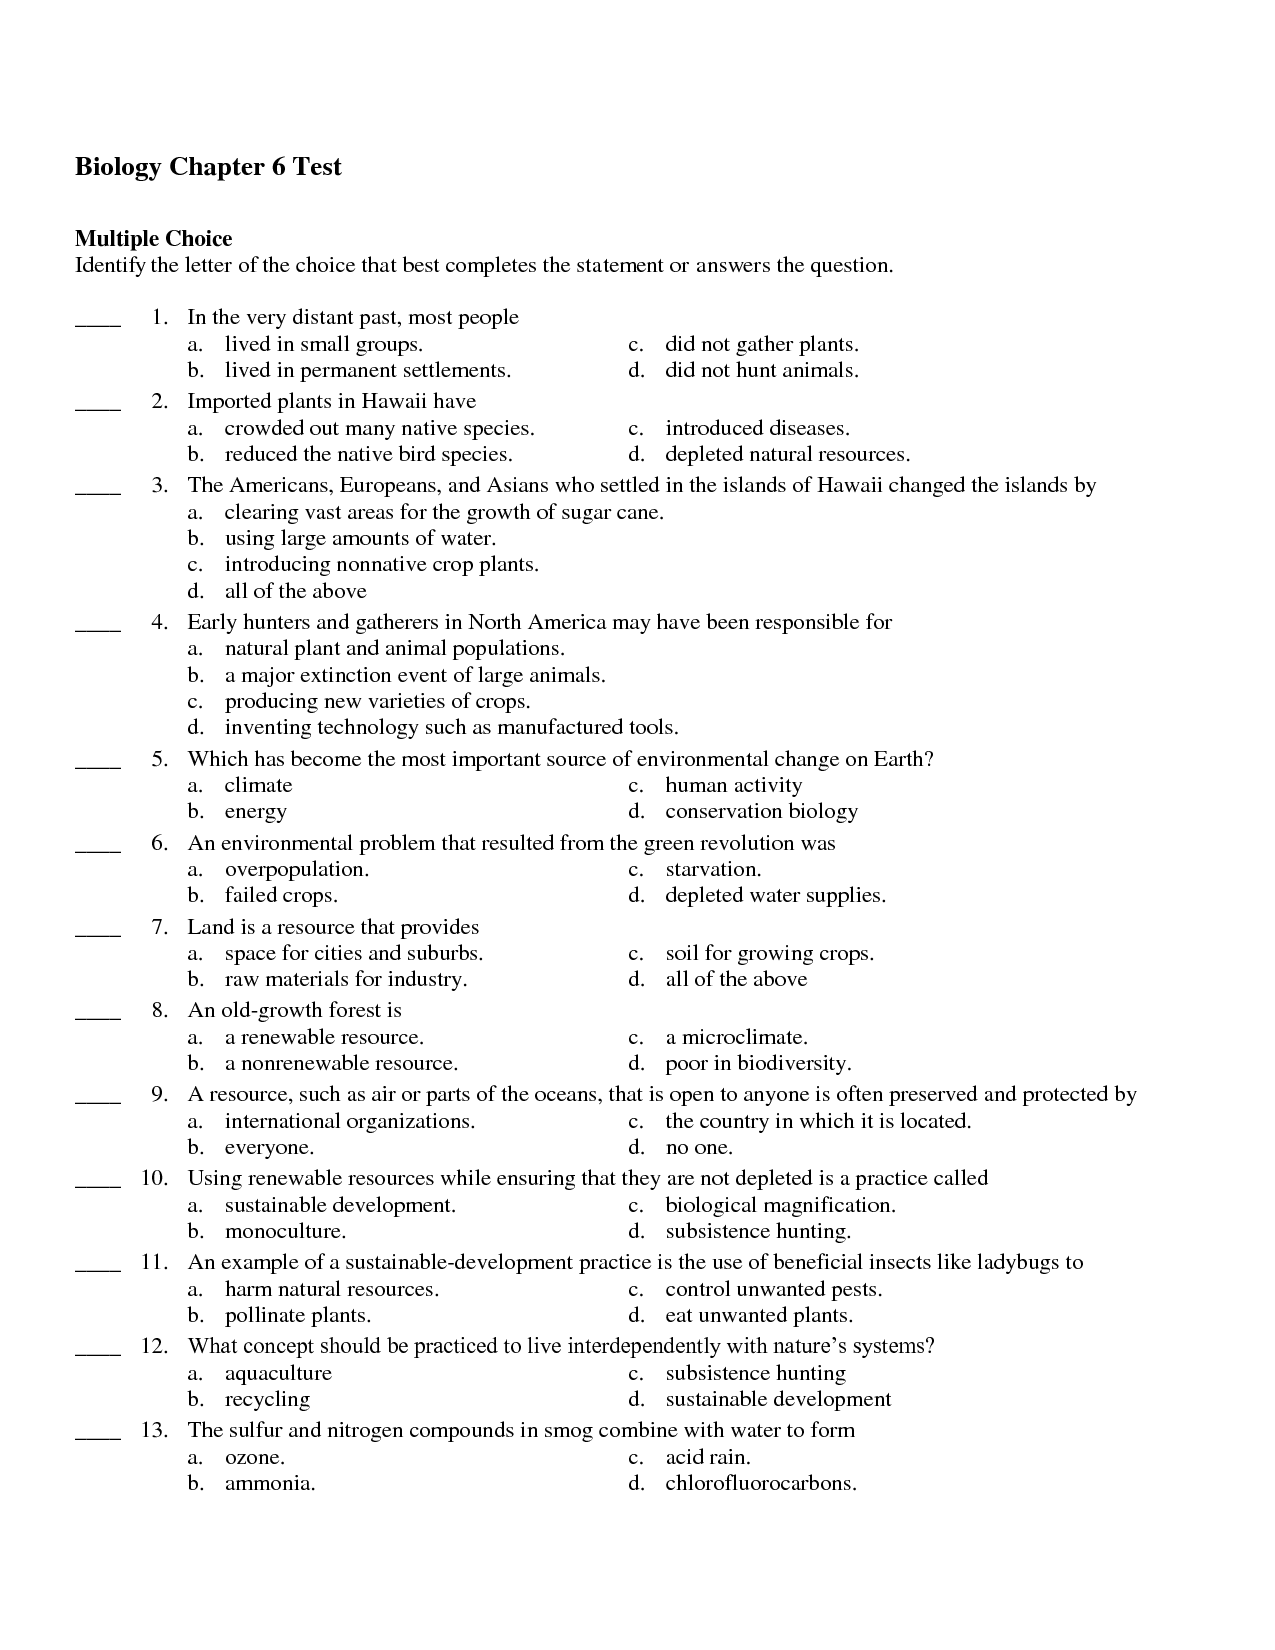 Holt Biology Worksheet Answer Key Image